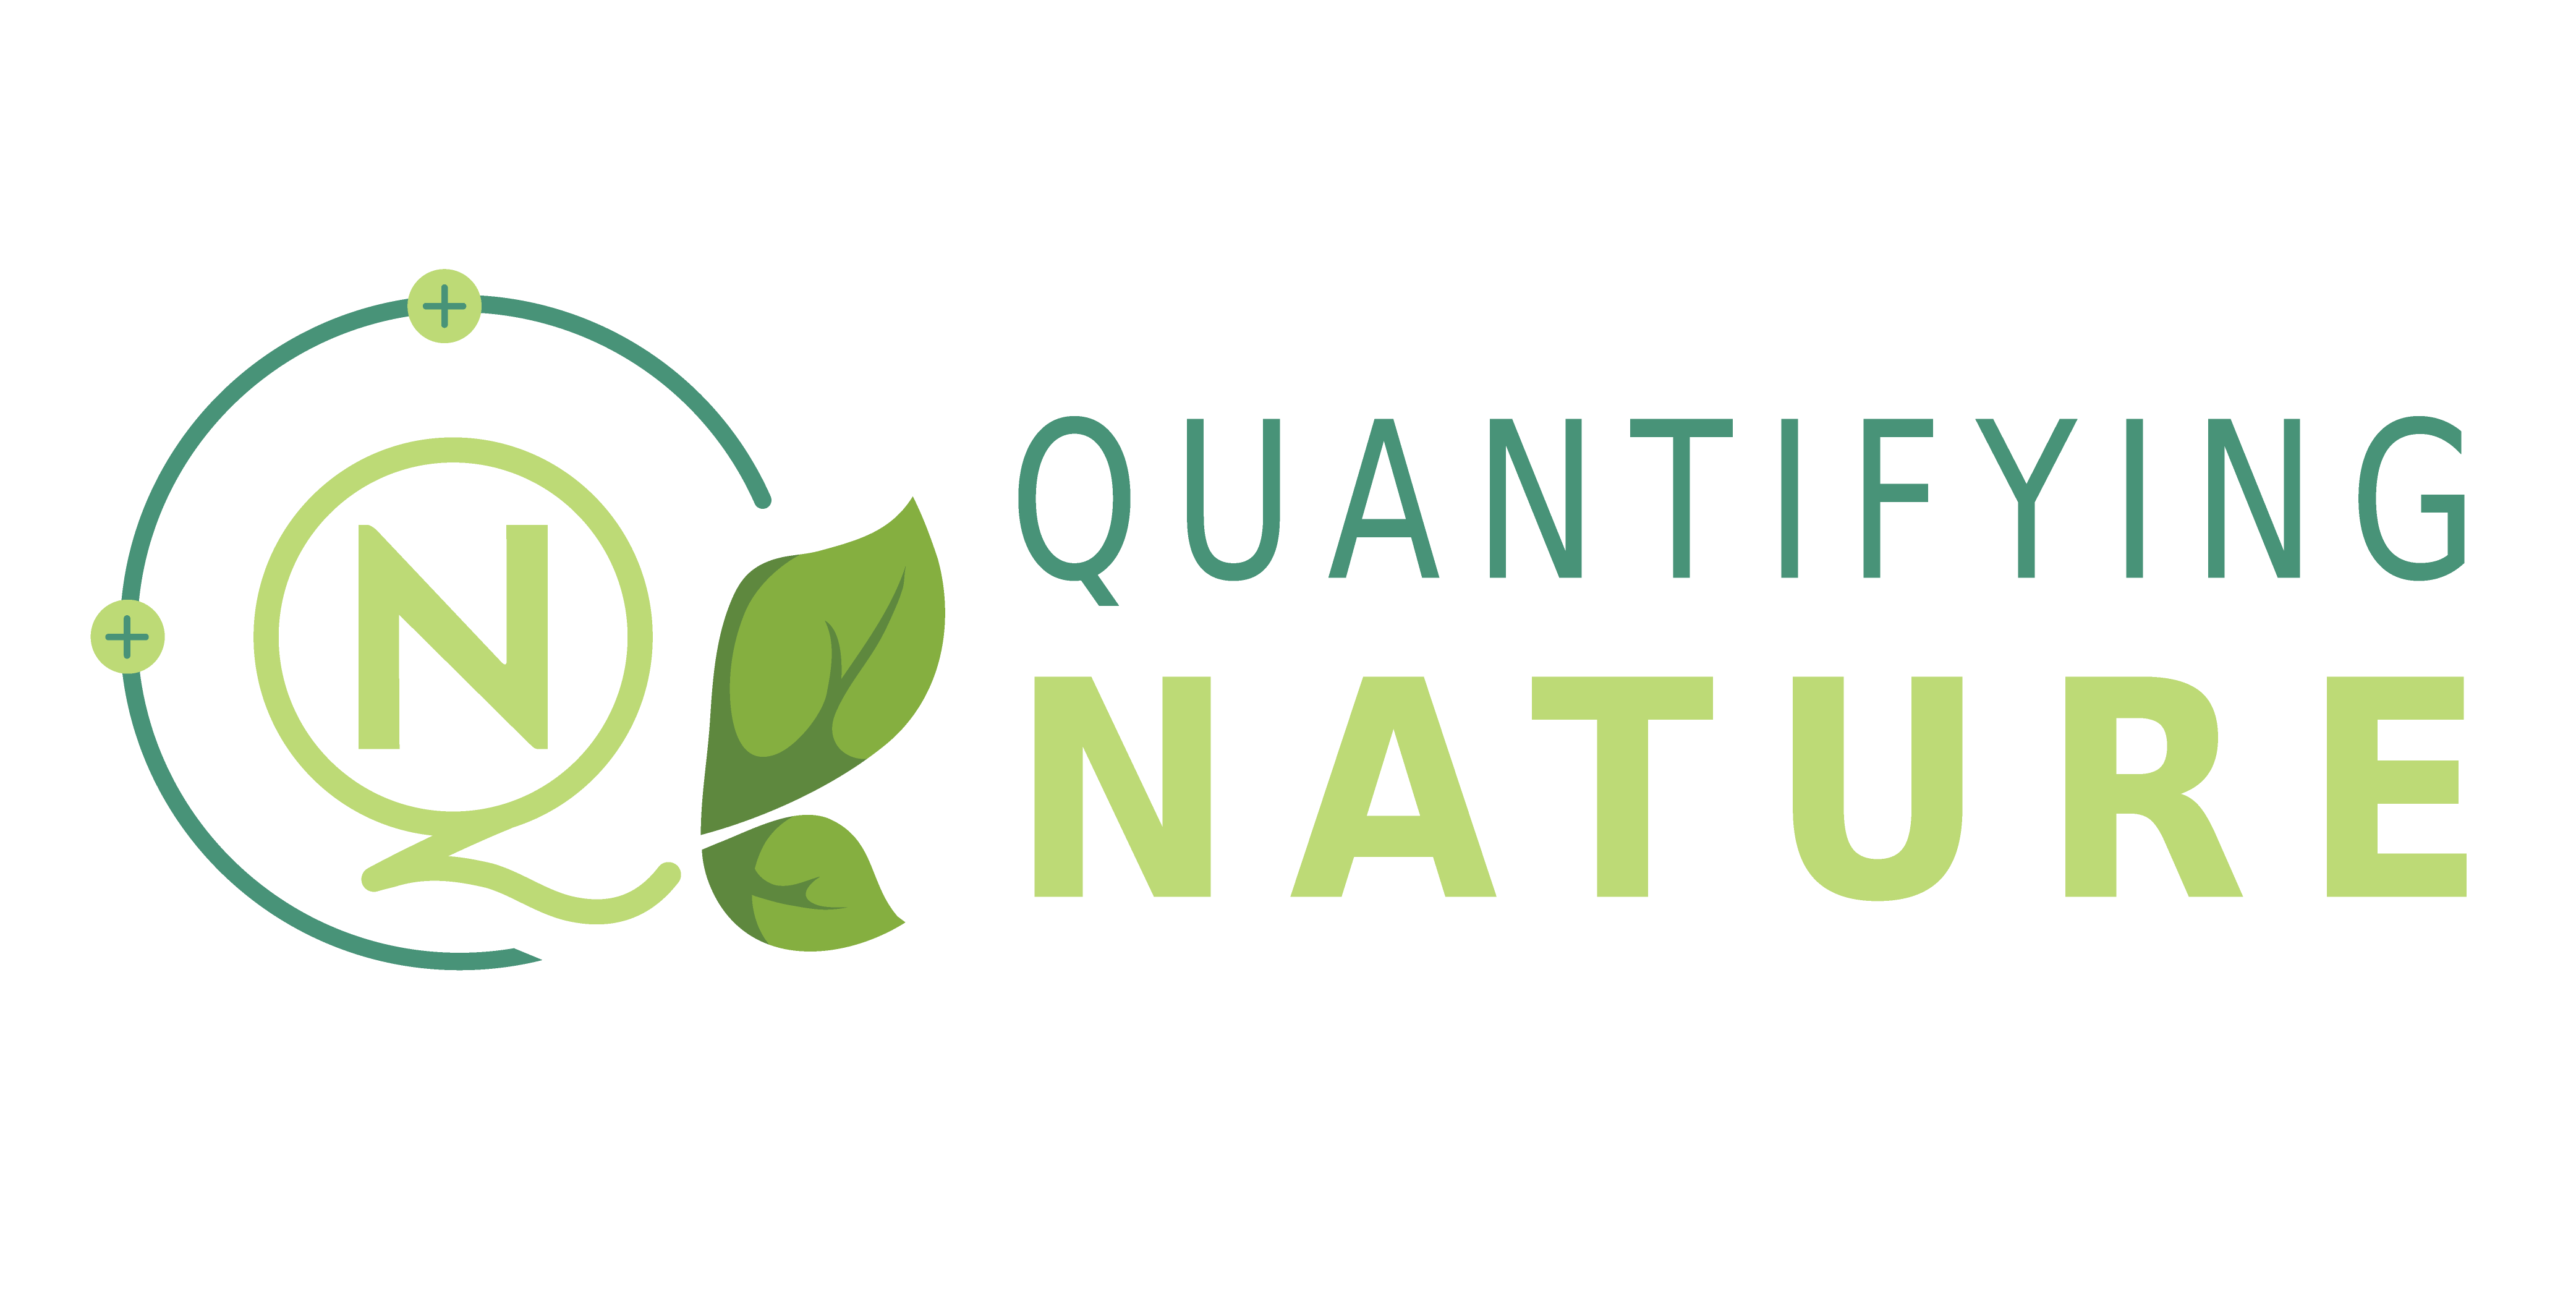 Quantifying Nature